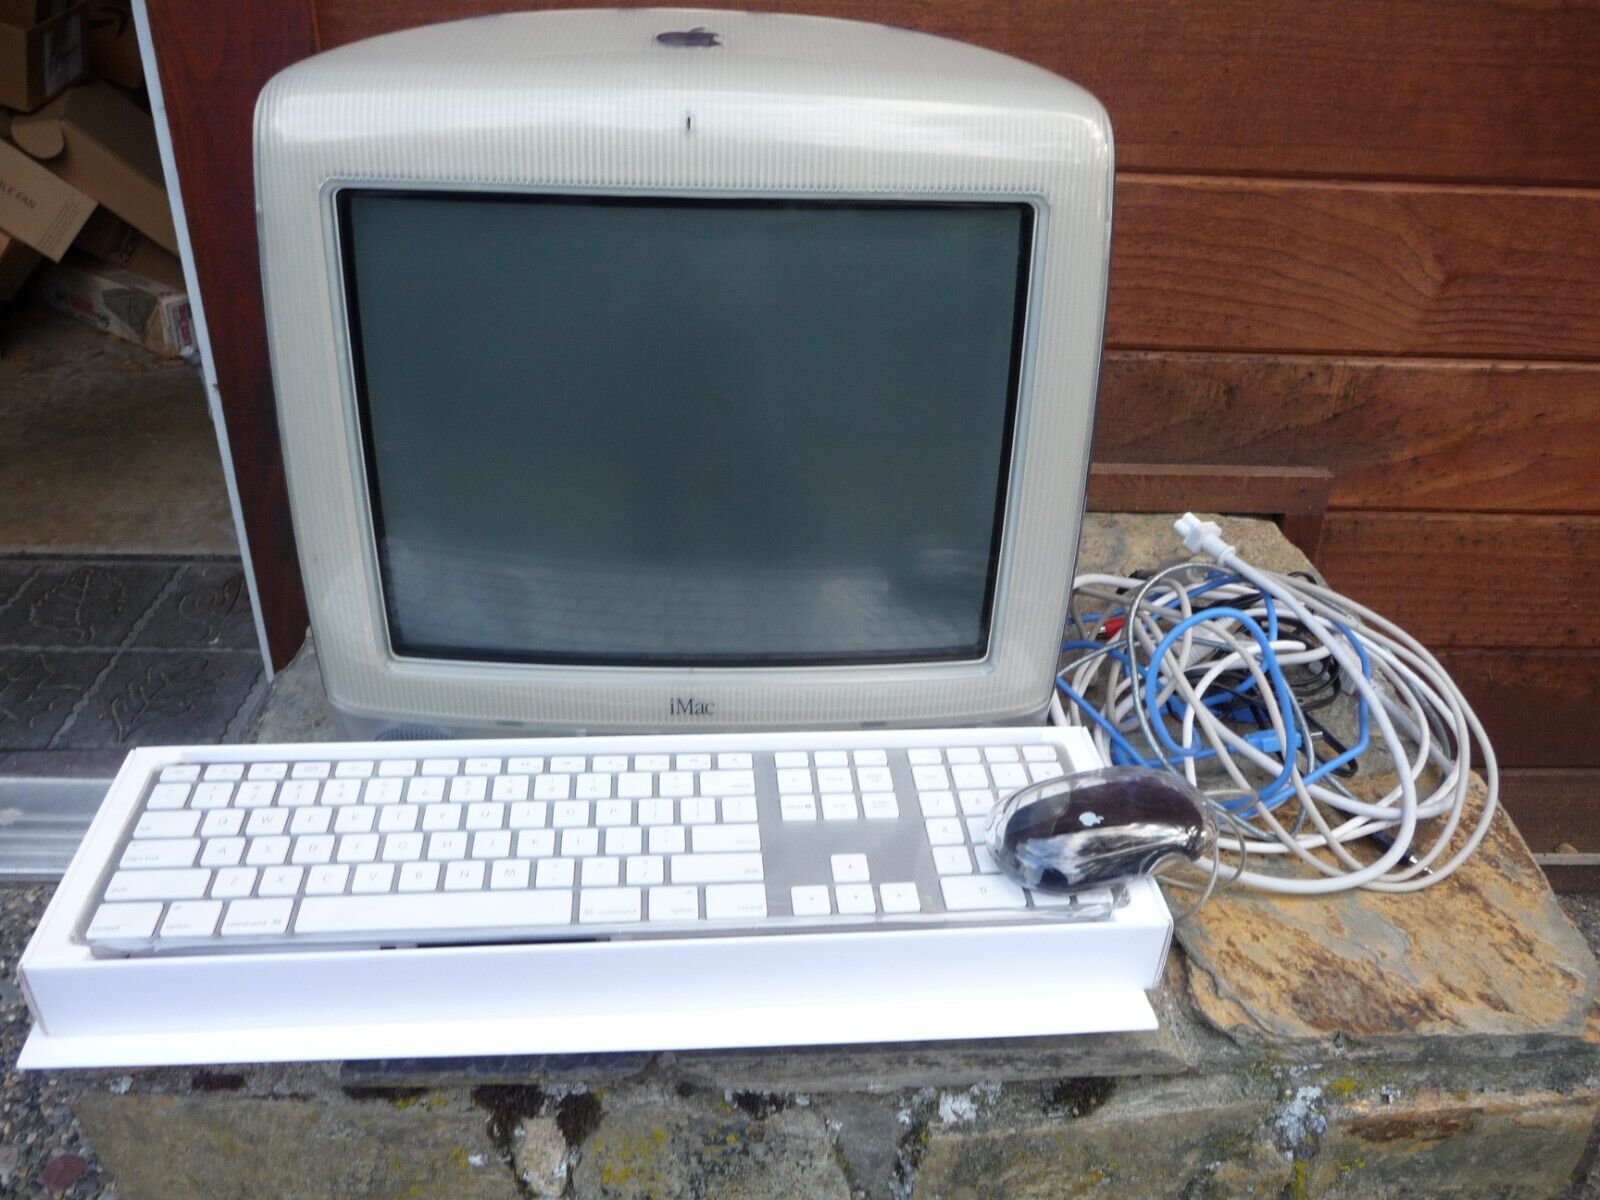 Apple iMac G3 Teal 15in Desktop Computer MAC Macintosh Vintage  